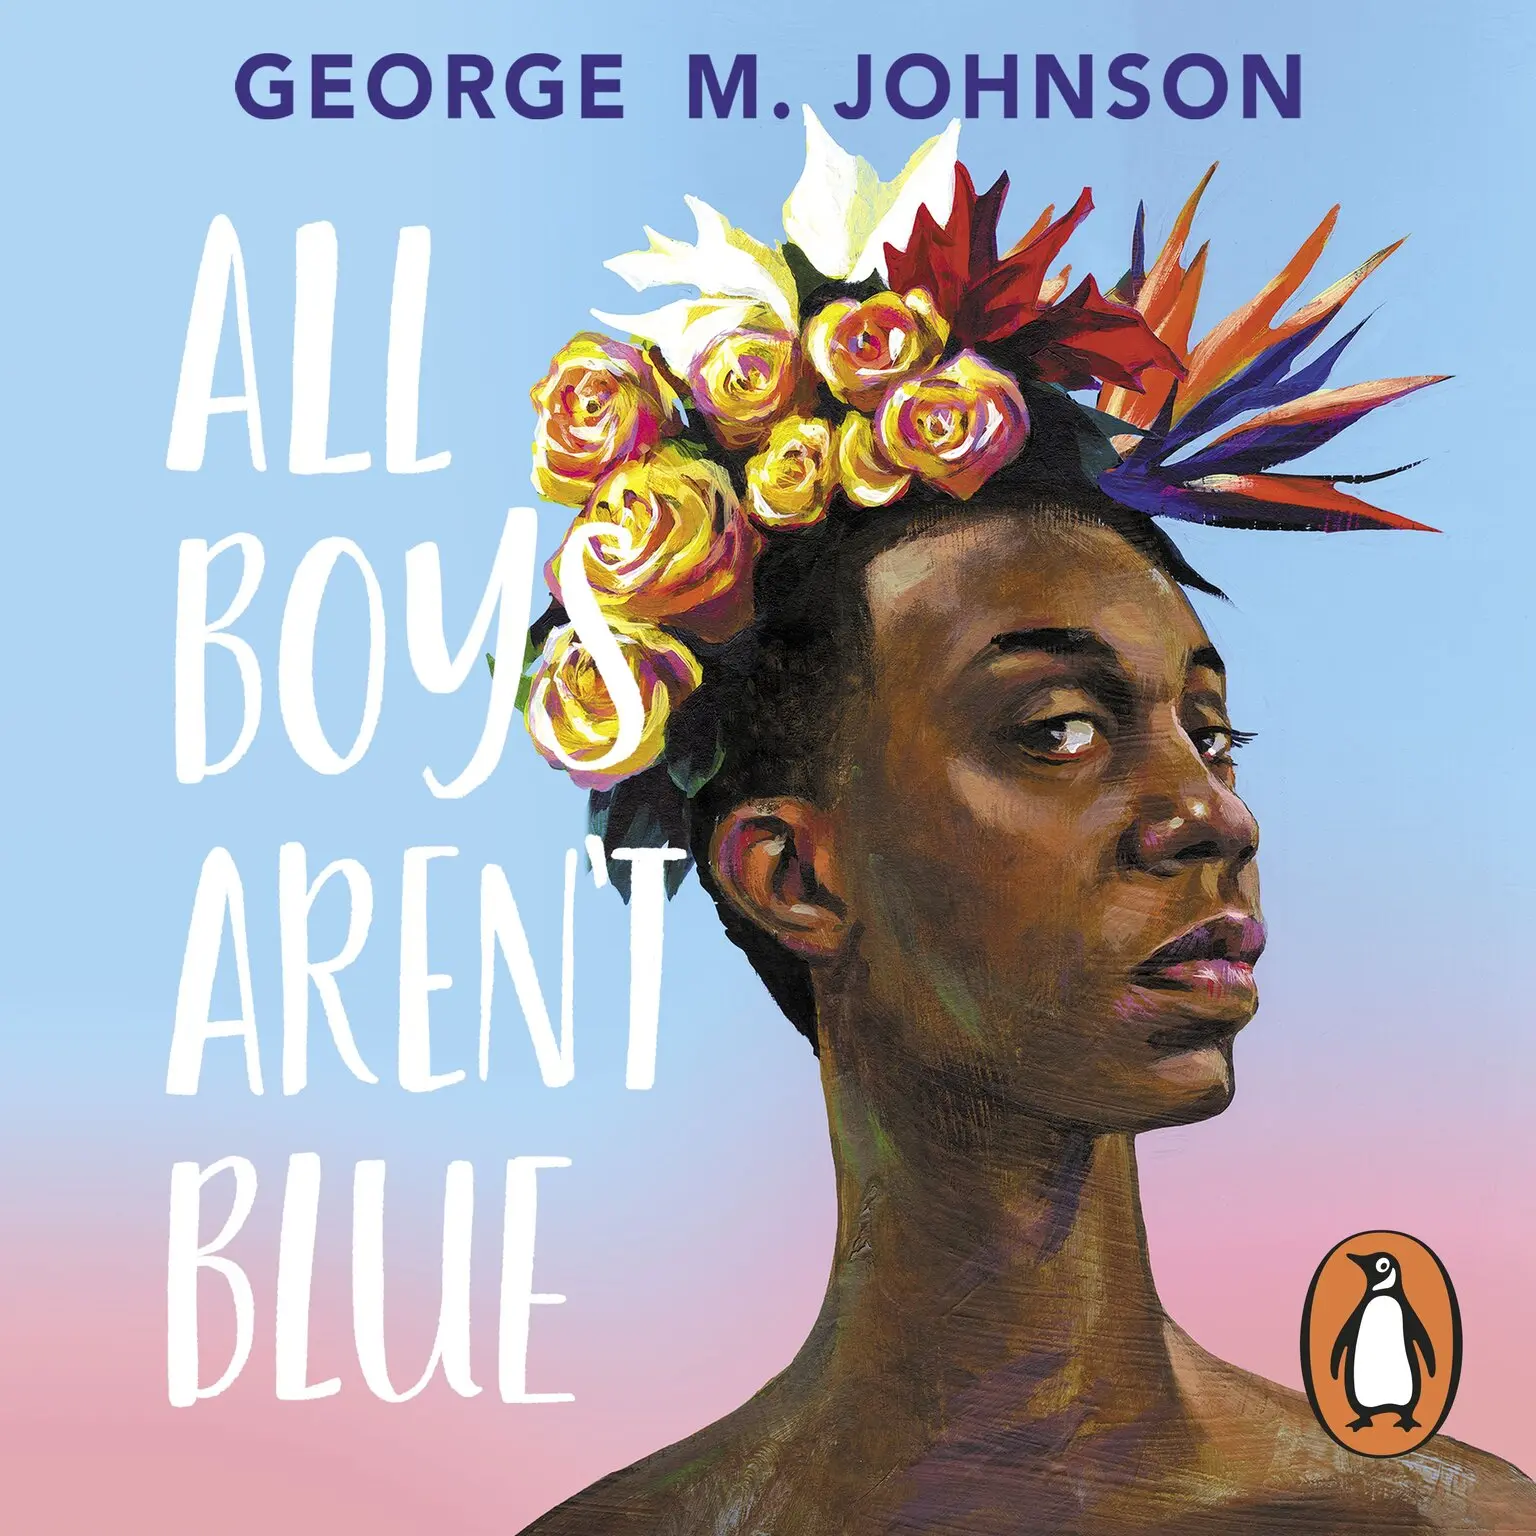 George M. Johnson: All Boys Aren't Blue (AudiobookFormat, 2021, Penguin Random House Children's UK)